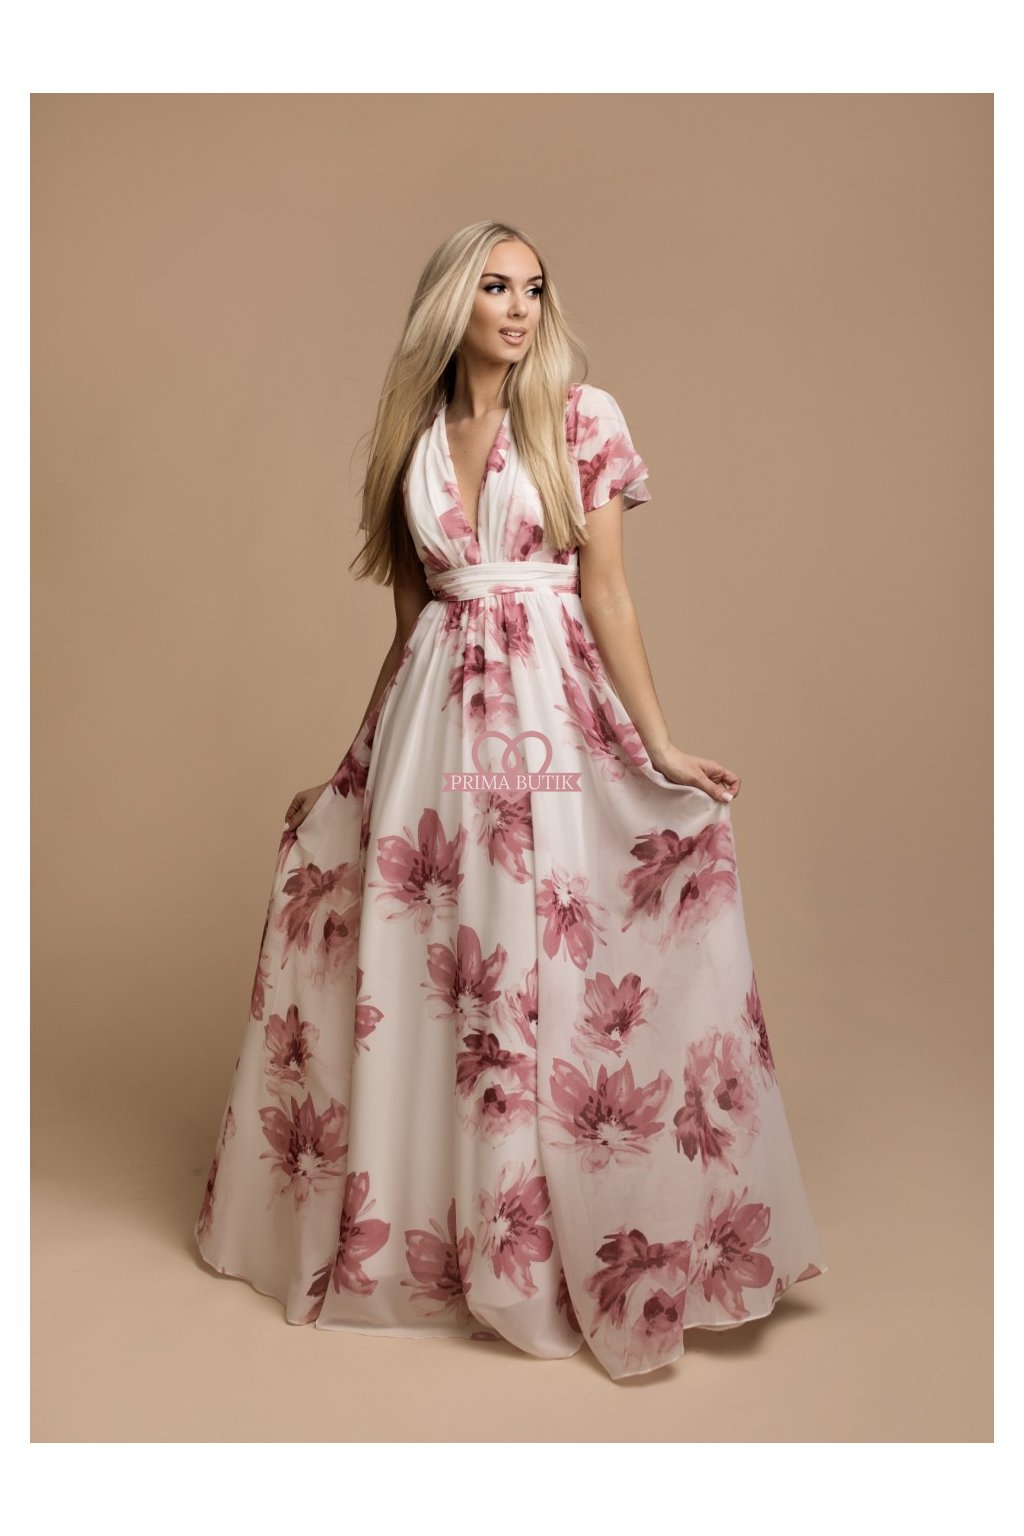 Šaty družička VICKY růžové květy